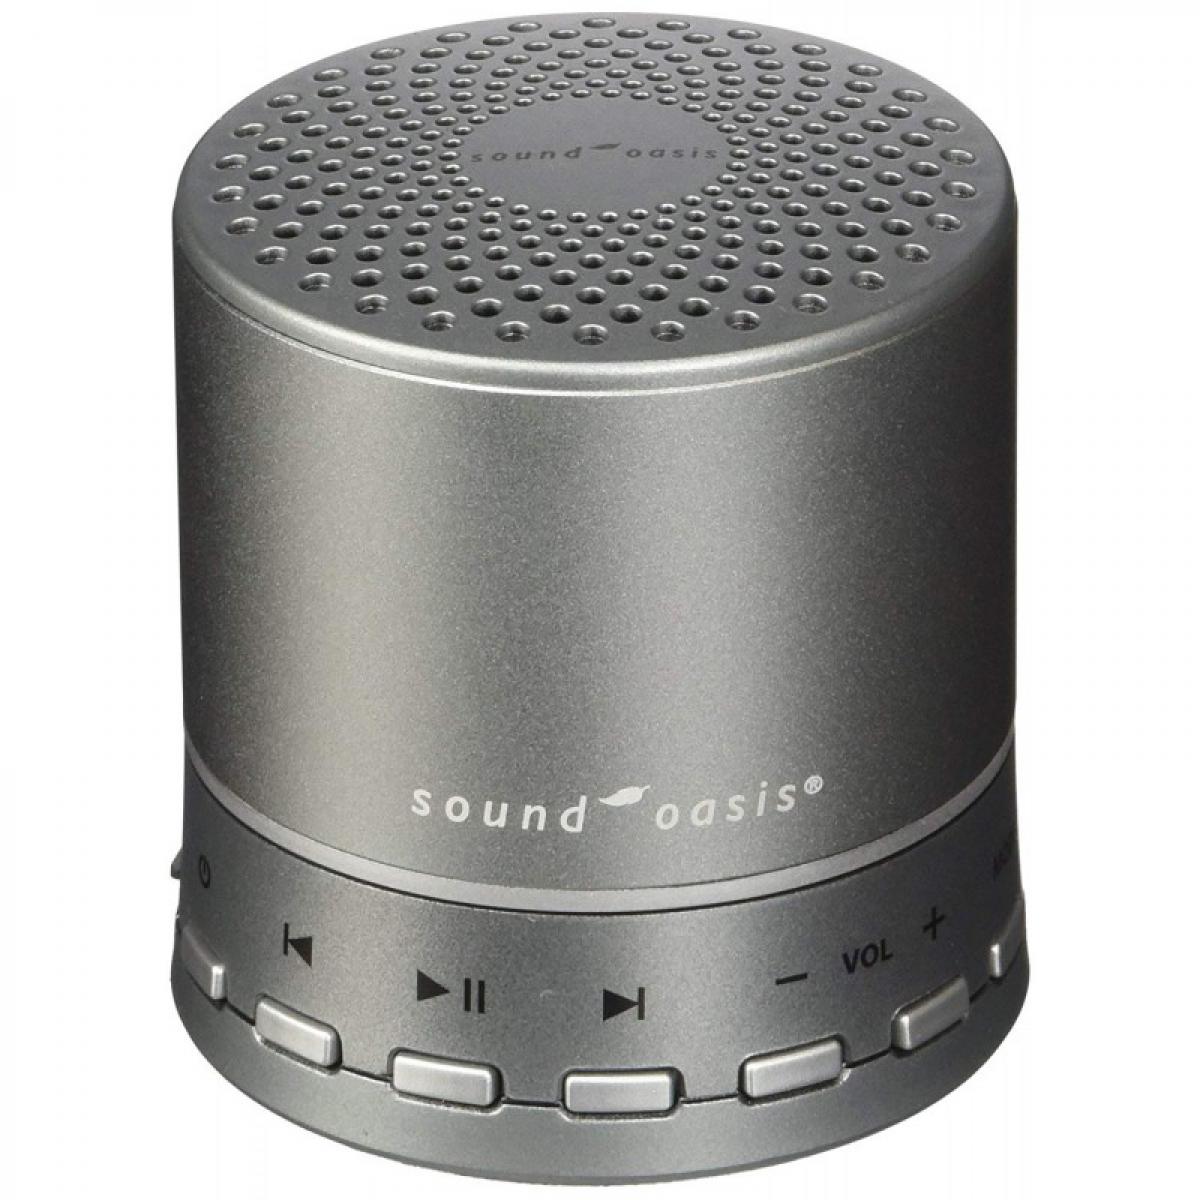 Sound Oasis - BST 100 : Générateur sons naturel, relaxation, soins acouphène - Autre appareil de mesure